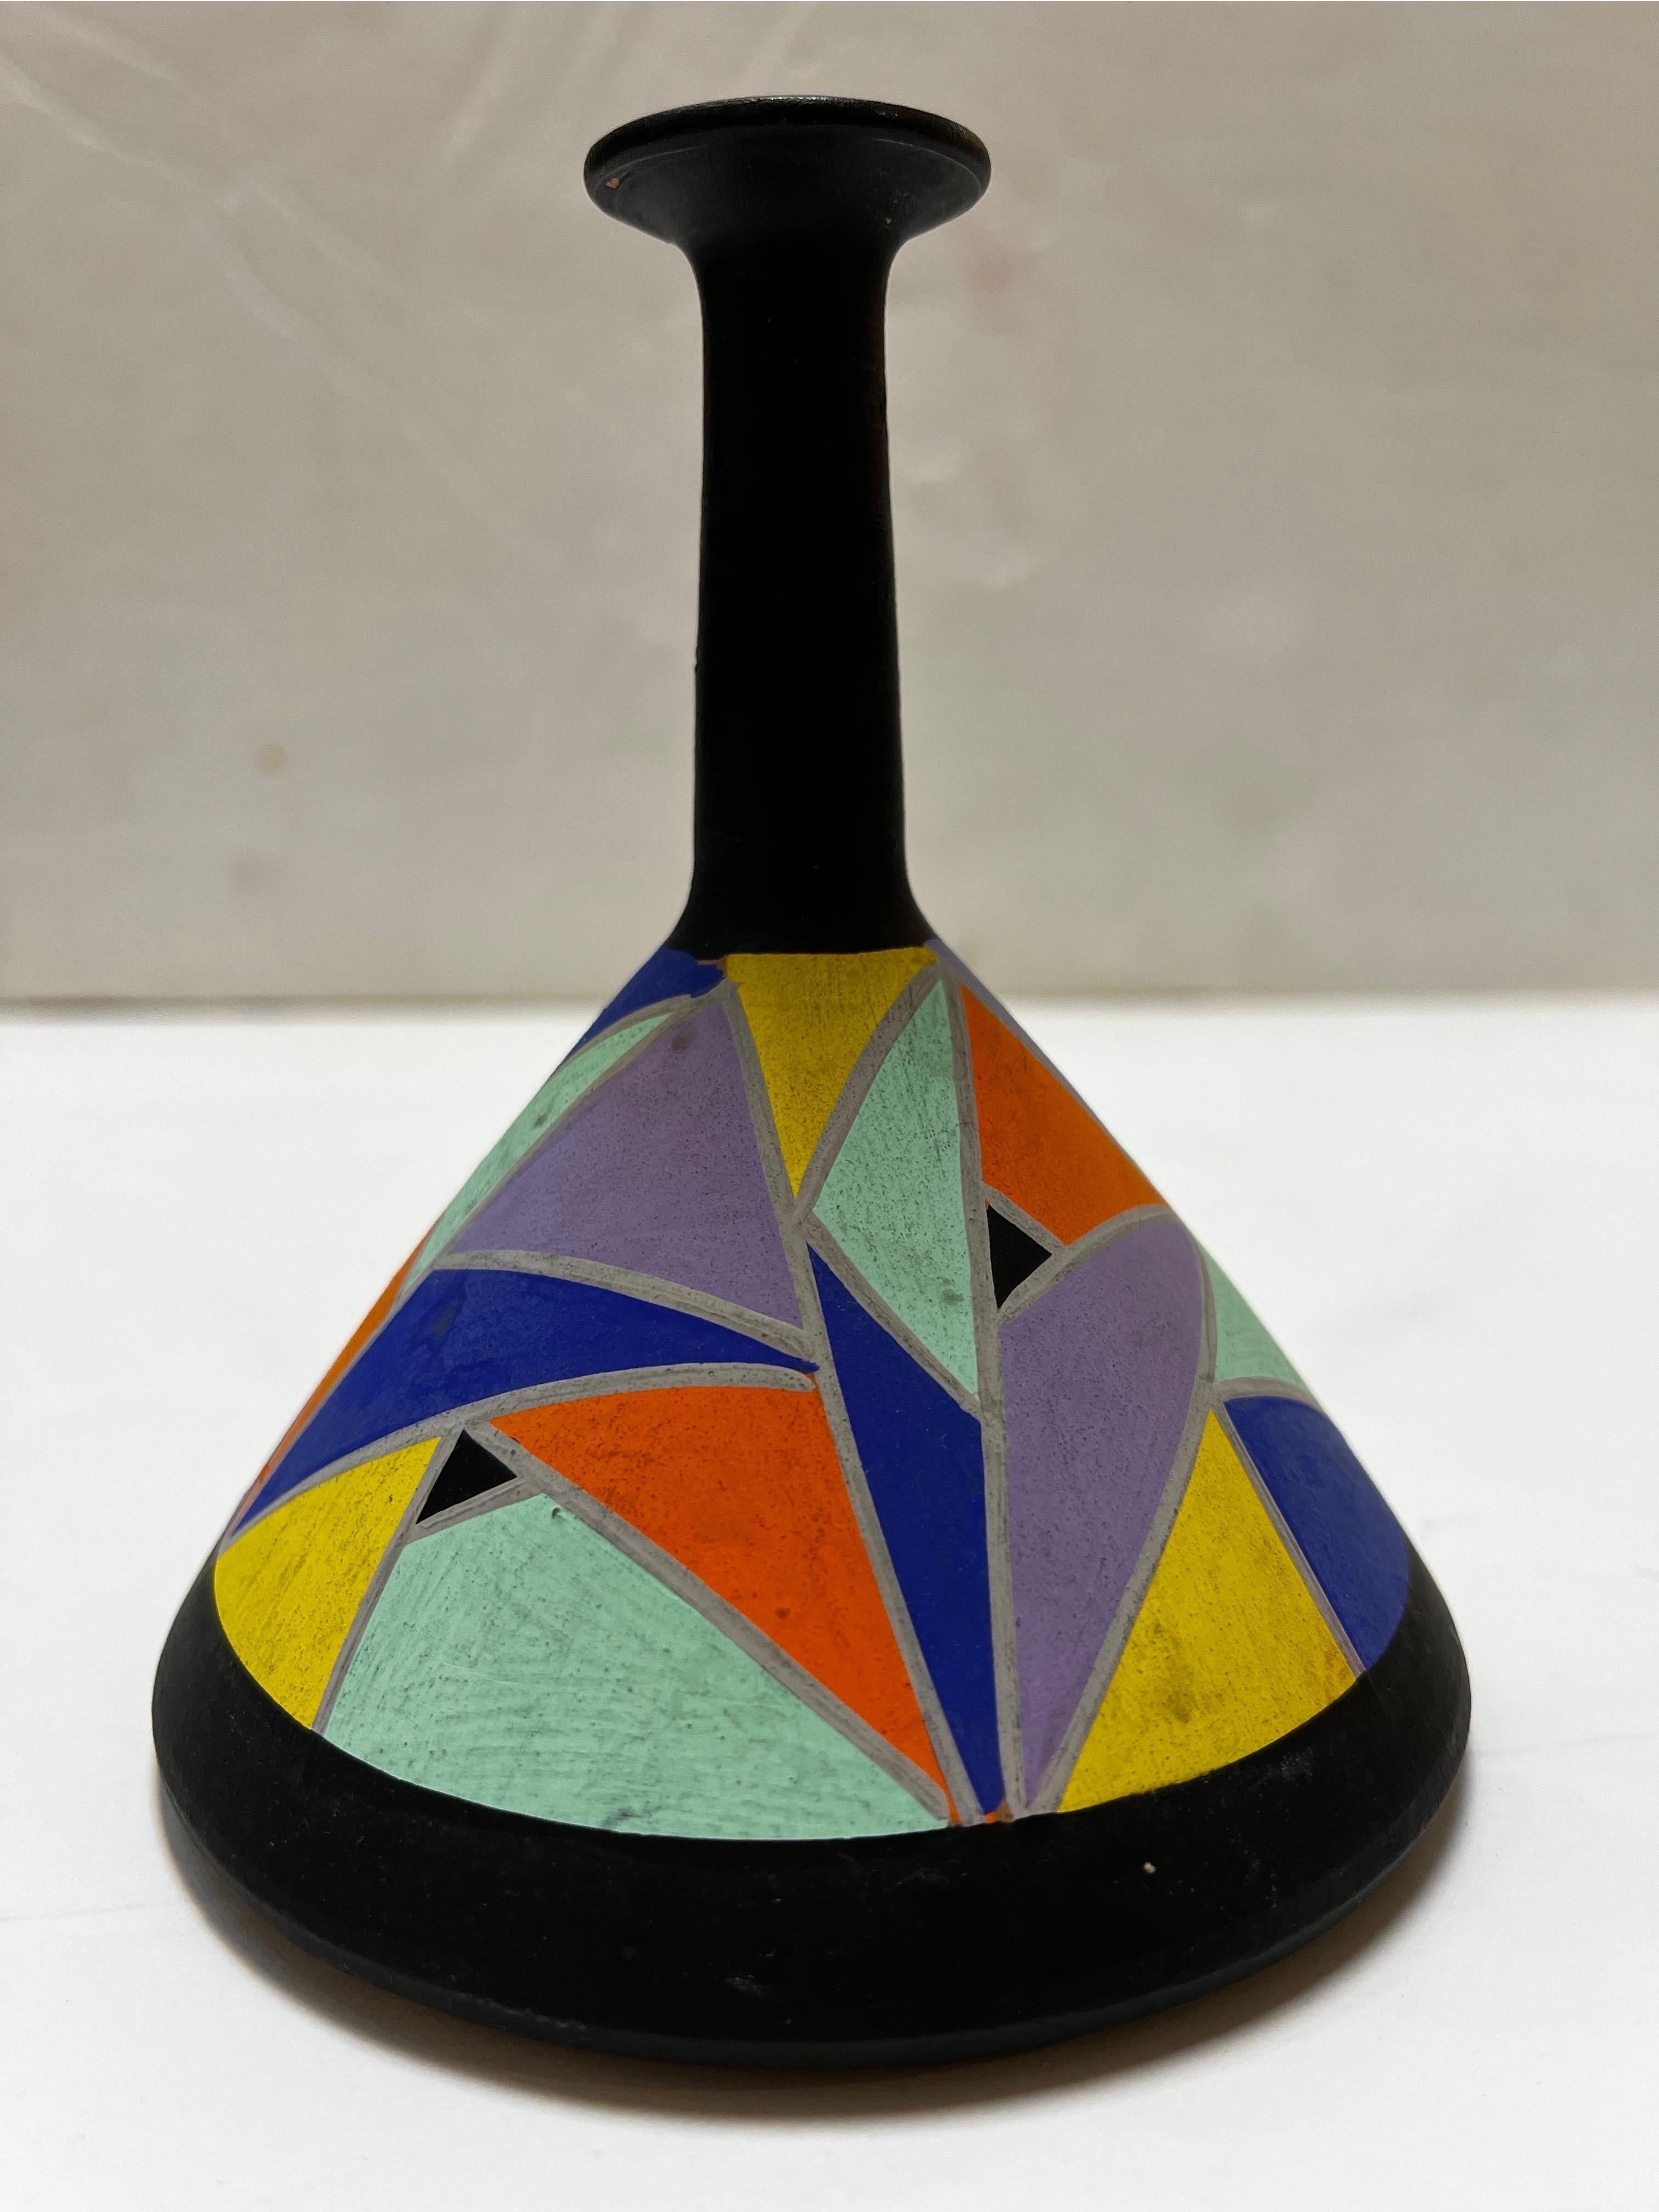 Ein Vintage circa 1980's oder 1990's handbemalte Keramik Vase. Das kühne, geometrische Dekor im modernistischen Stil wird in voller Farbe vor einem schwarz lackierten Kontrapunkt präsentiert. Die konische Basis wird durch einen schlanken, länglichen